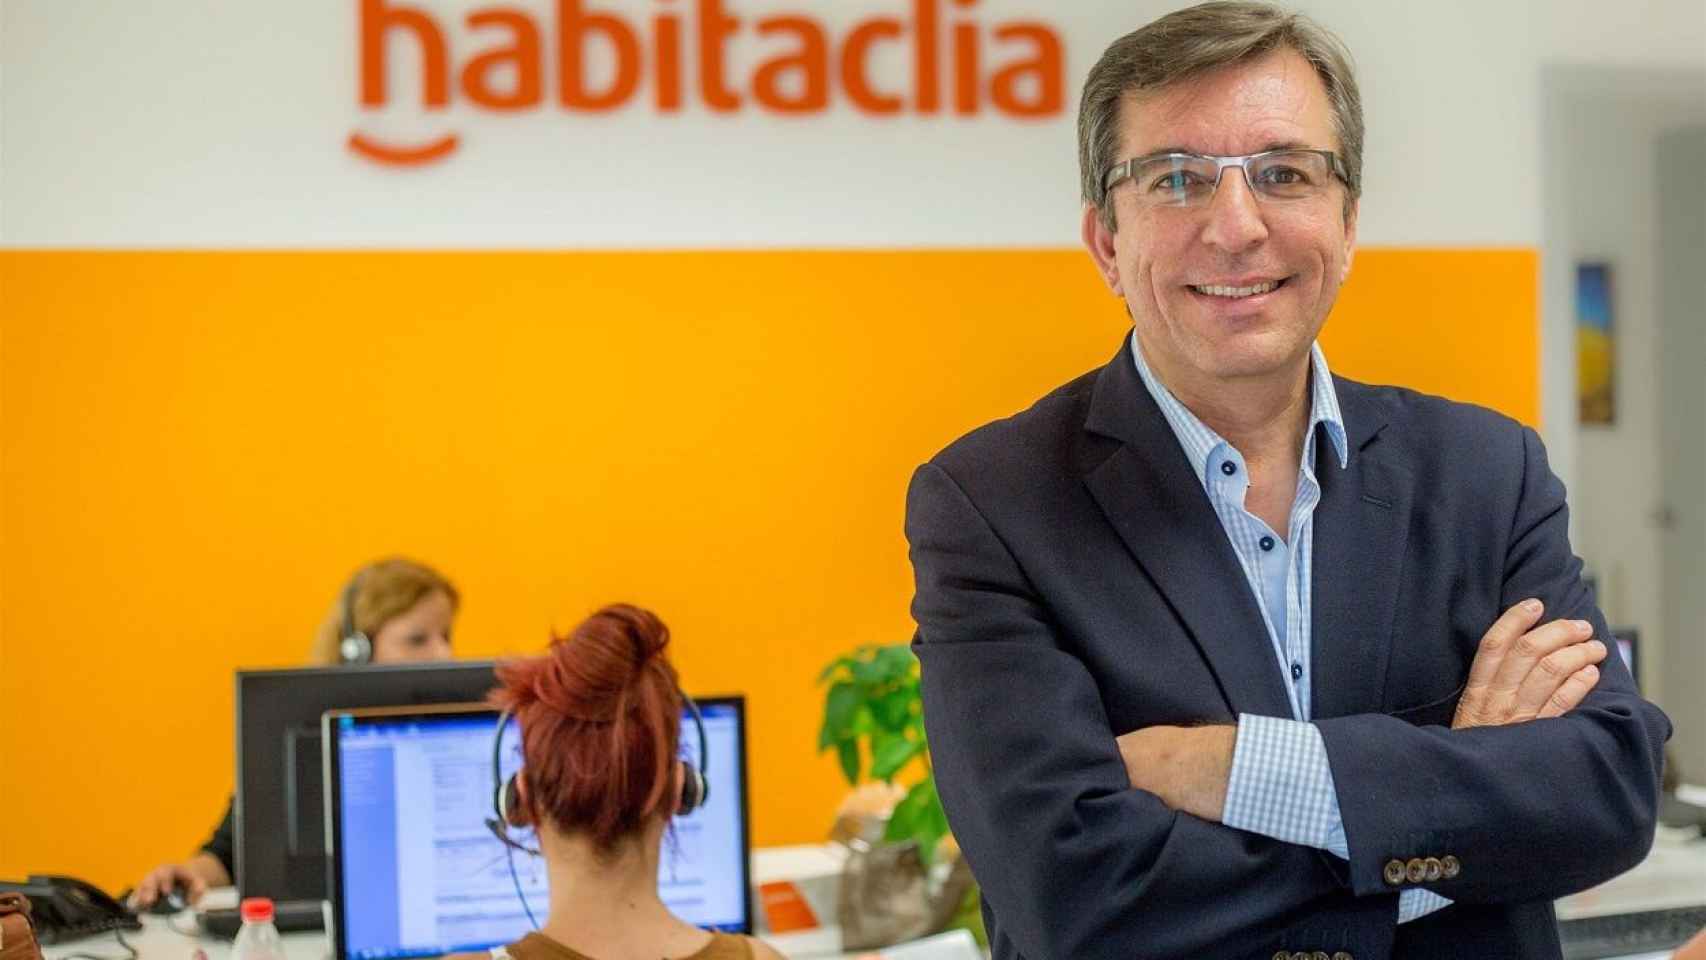 Javier Llanas, director general de Habitaclia, advierte sobre una nueva burbuja inmobiliaria / EUROPA PRESS